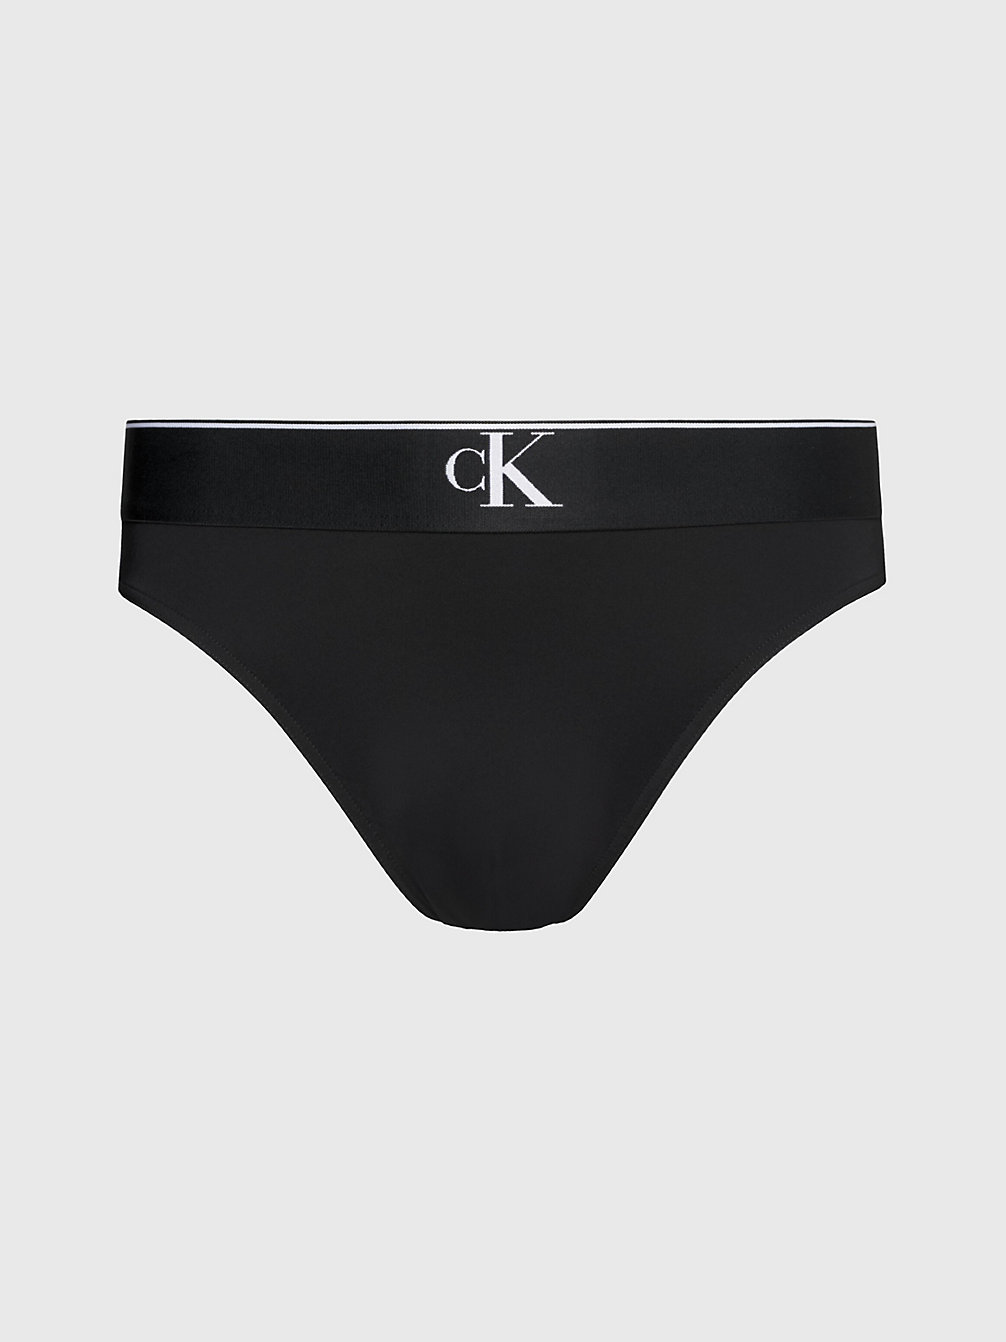 PVH BLACK Swim Briefs - CK Monogram undefined men Calvin Klein